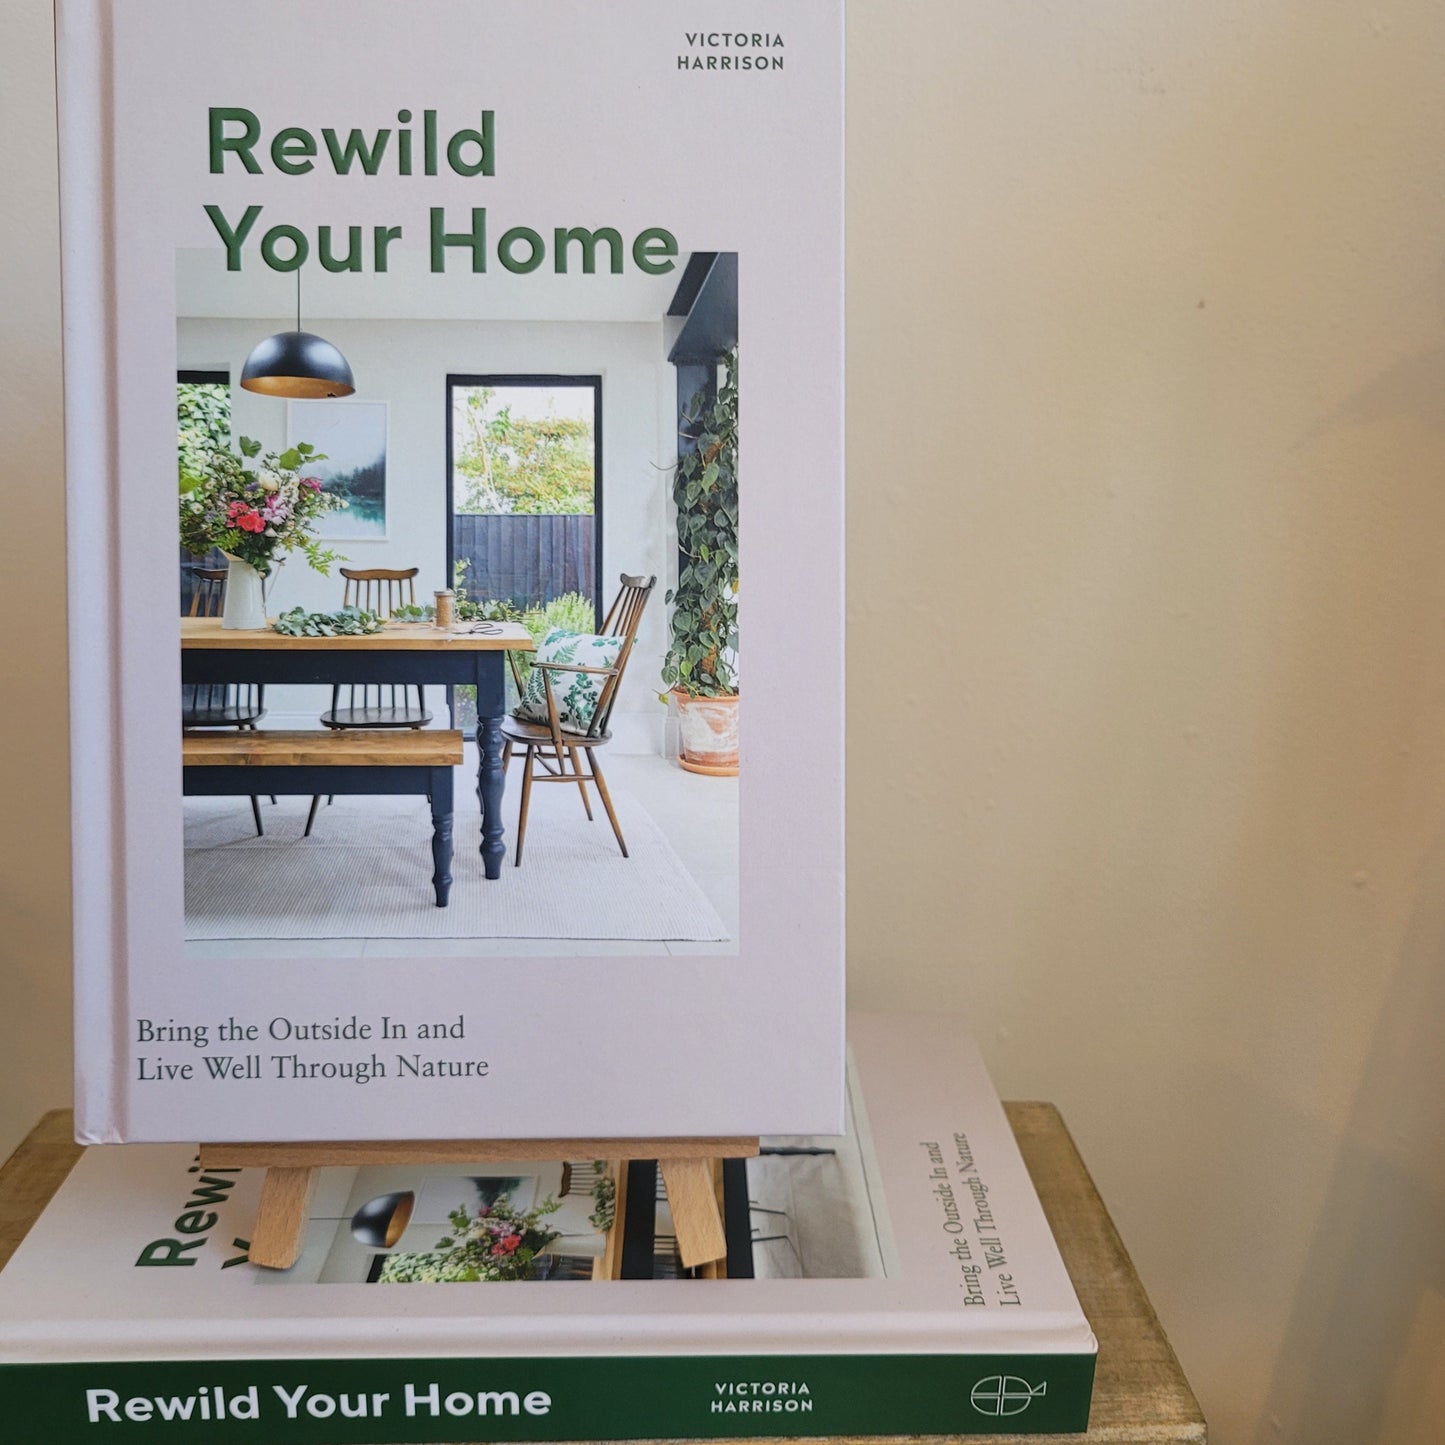 Rewild your home